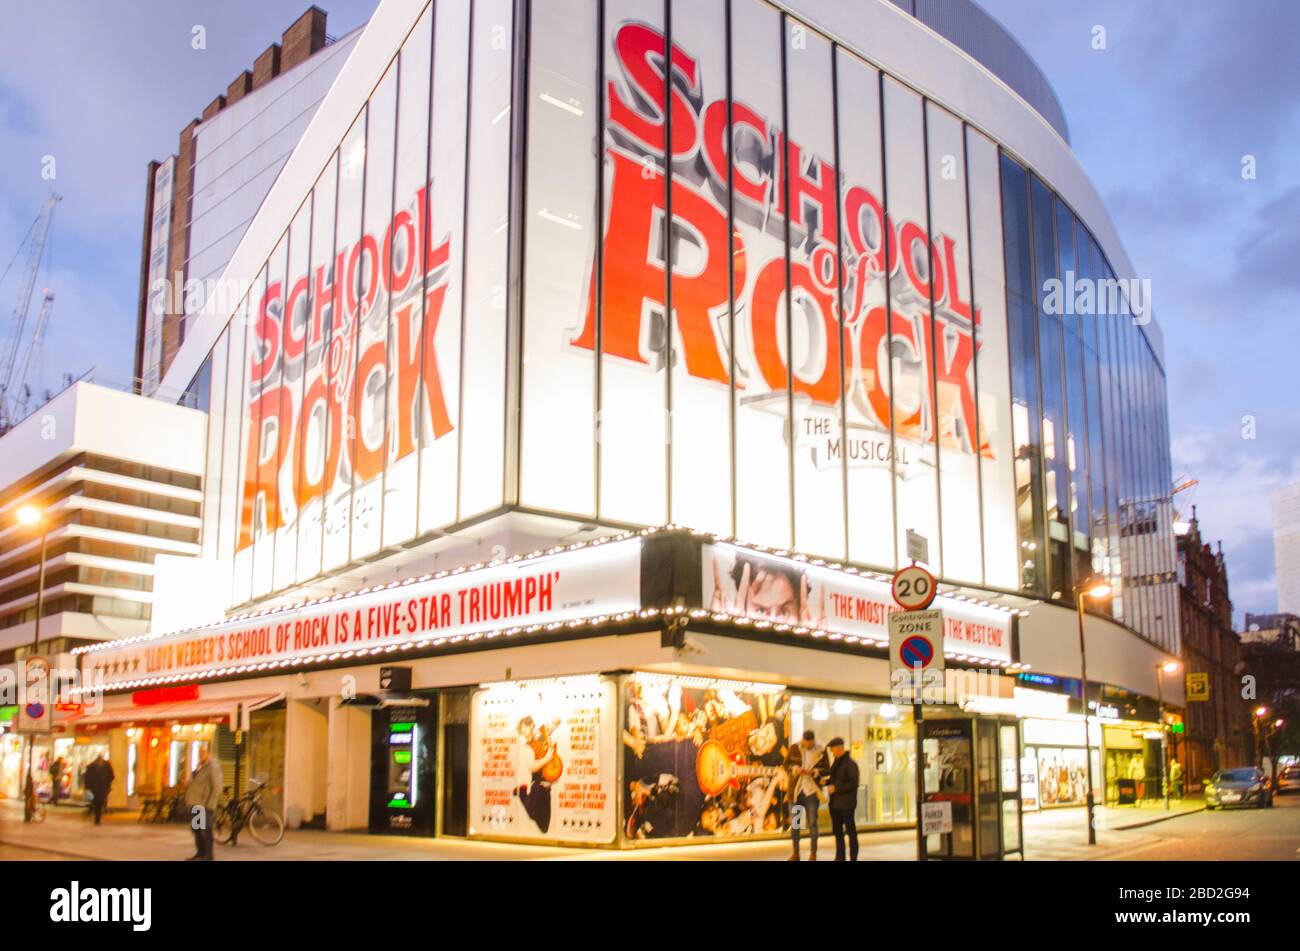 Espectáculo teatral de la Escuela de Rock en el West End de Londres Foto de stock